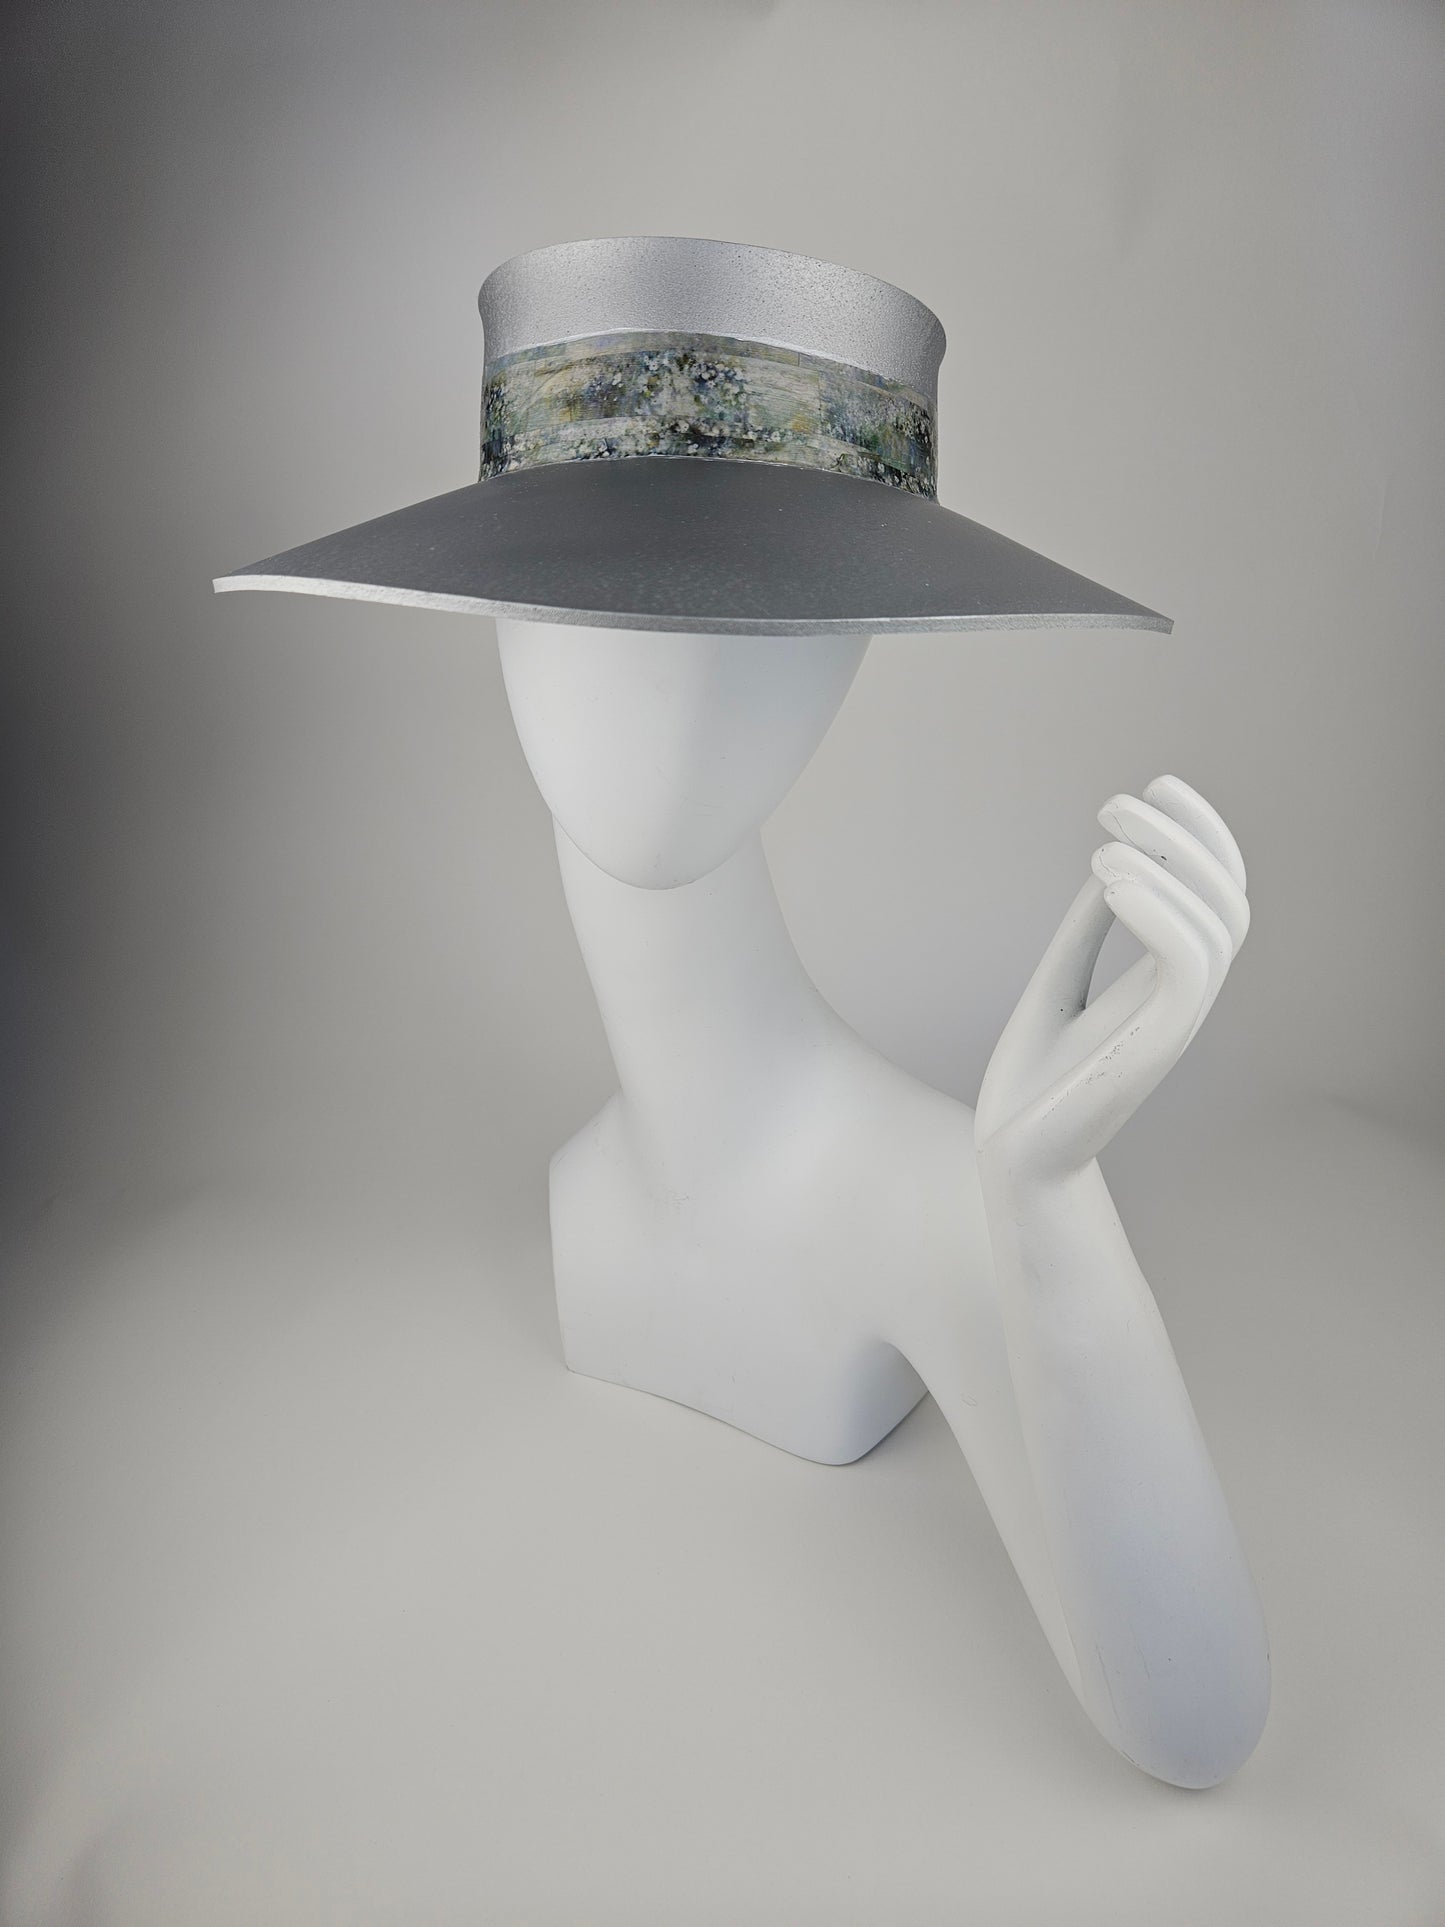 Trending Silver Audrey Sun Visor Hat with Lovely Green Monet Style Band: 1950s, Walks, Brunch, Asian, Golf, Summer, Church, No Headache, Pool, Beach